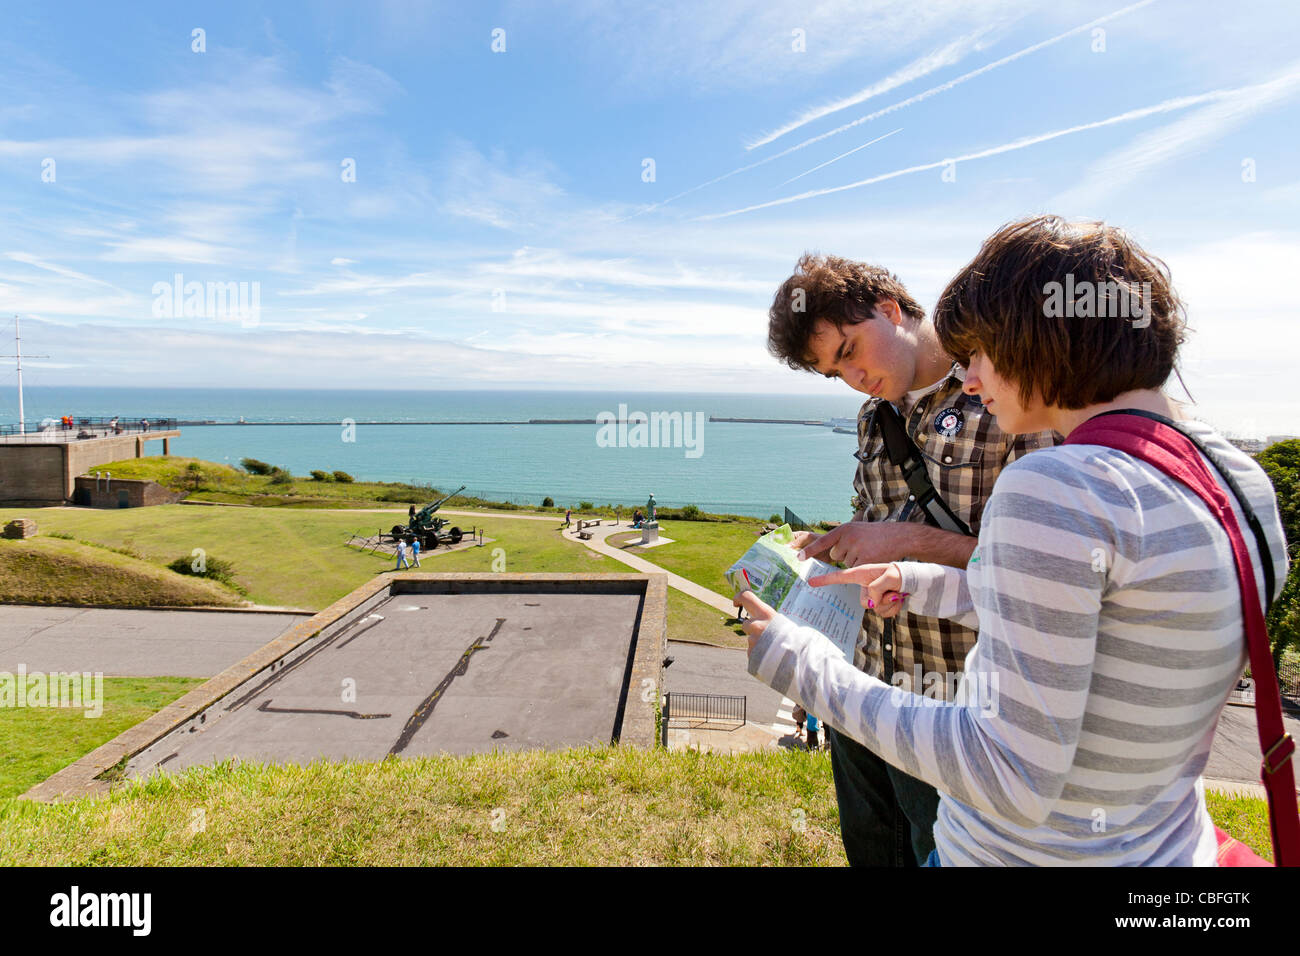 Les touristes de la lecture d'un site dominant le port de Douvres, Douvres, en Angleterre. Banque D'Images